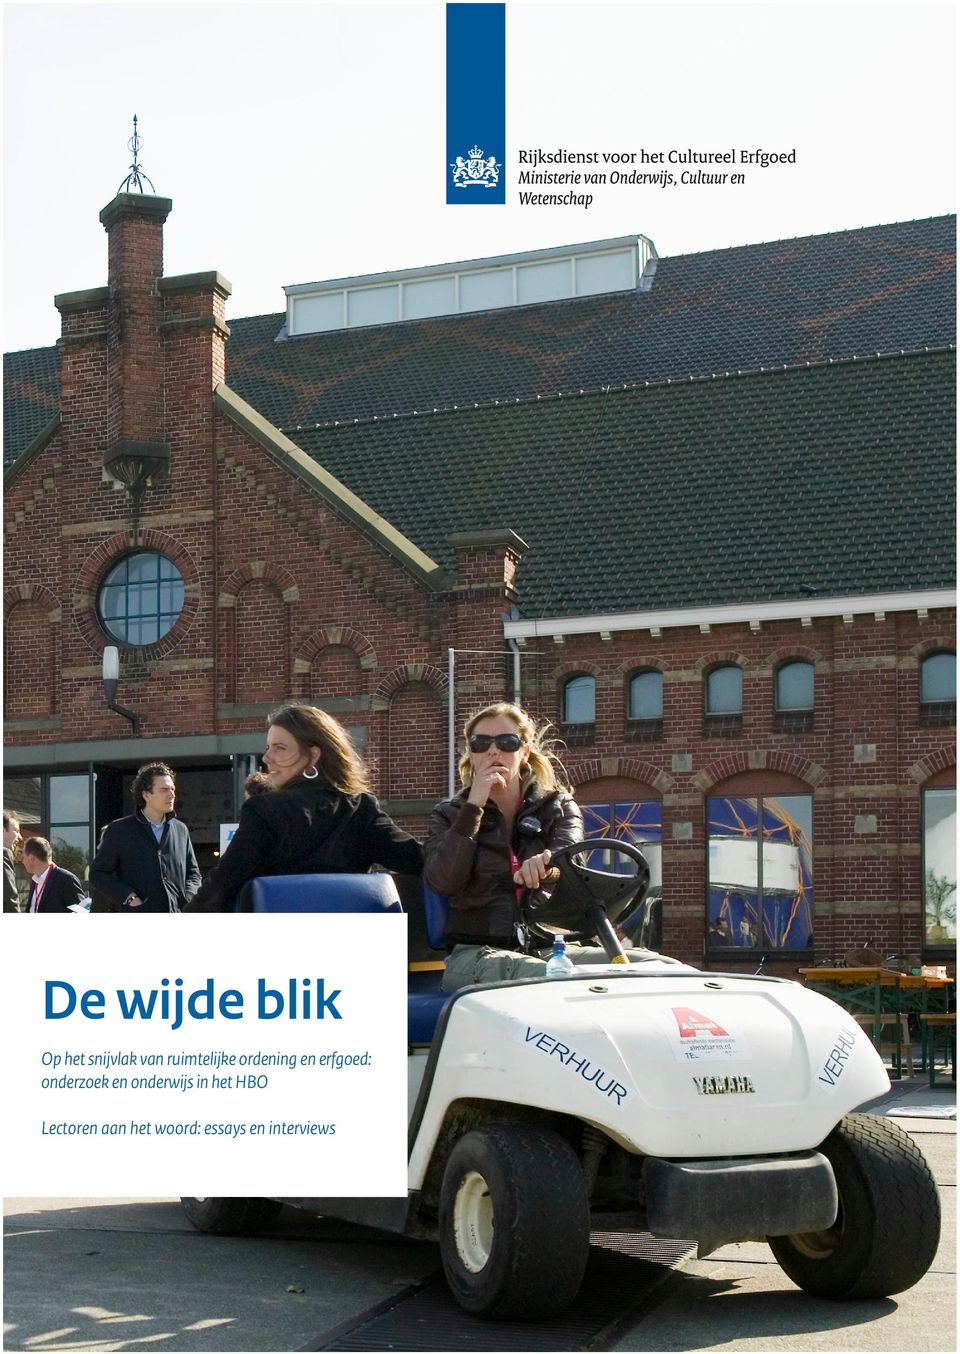 Duidelijk is dat erfgoed richting kan geven aan de transformatie van het Nederlands cultuurlandschap.